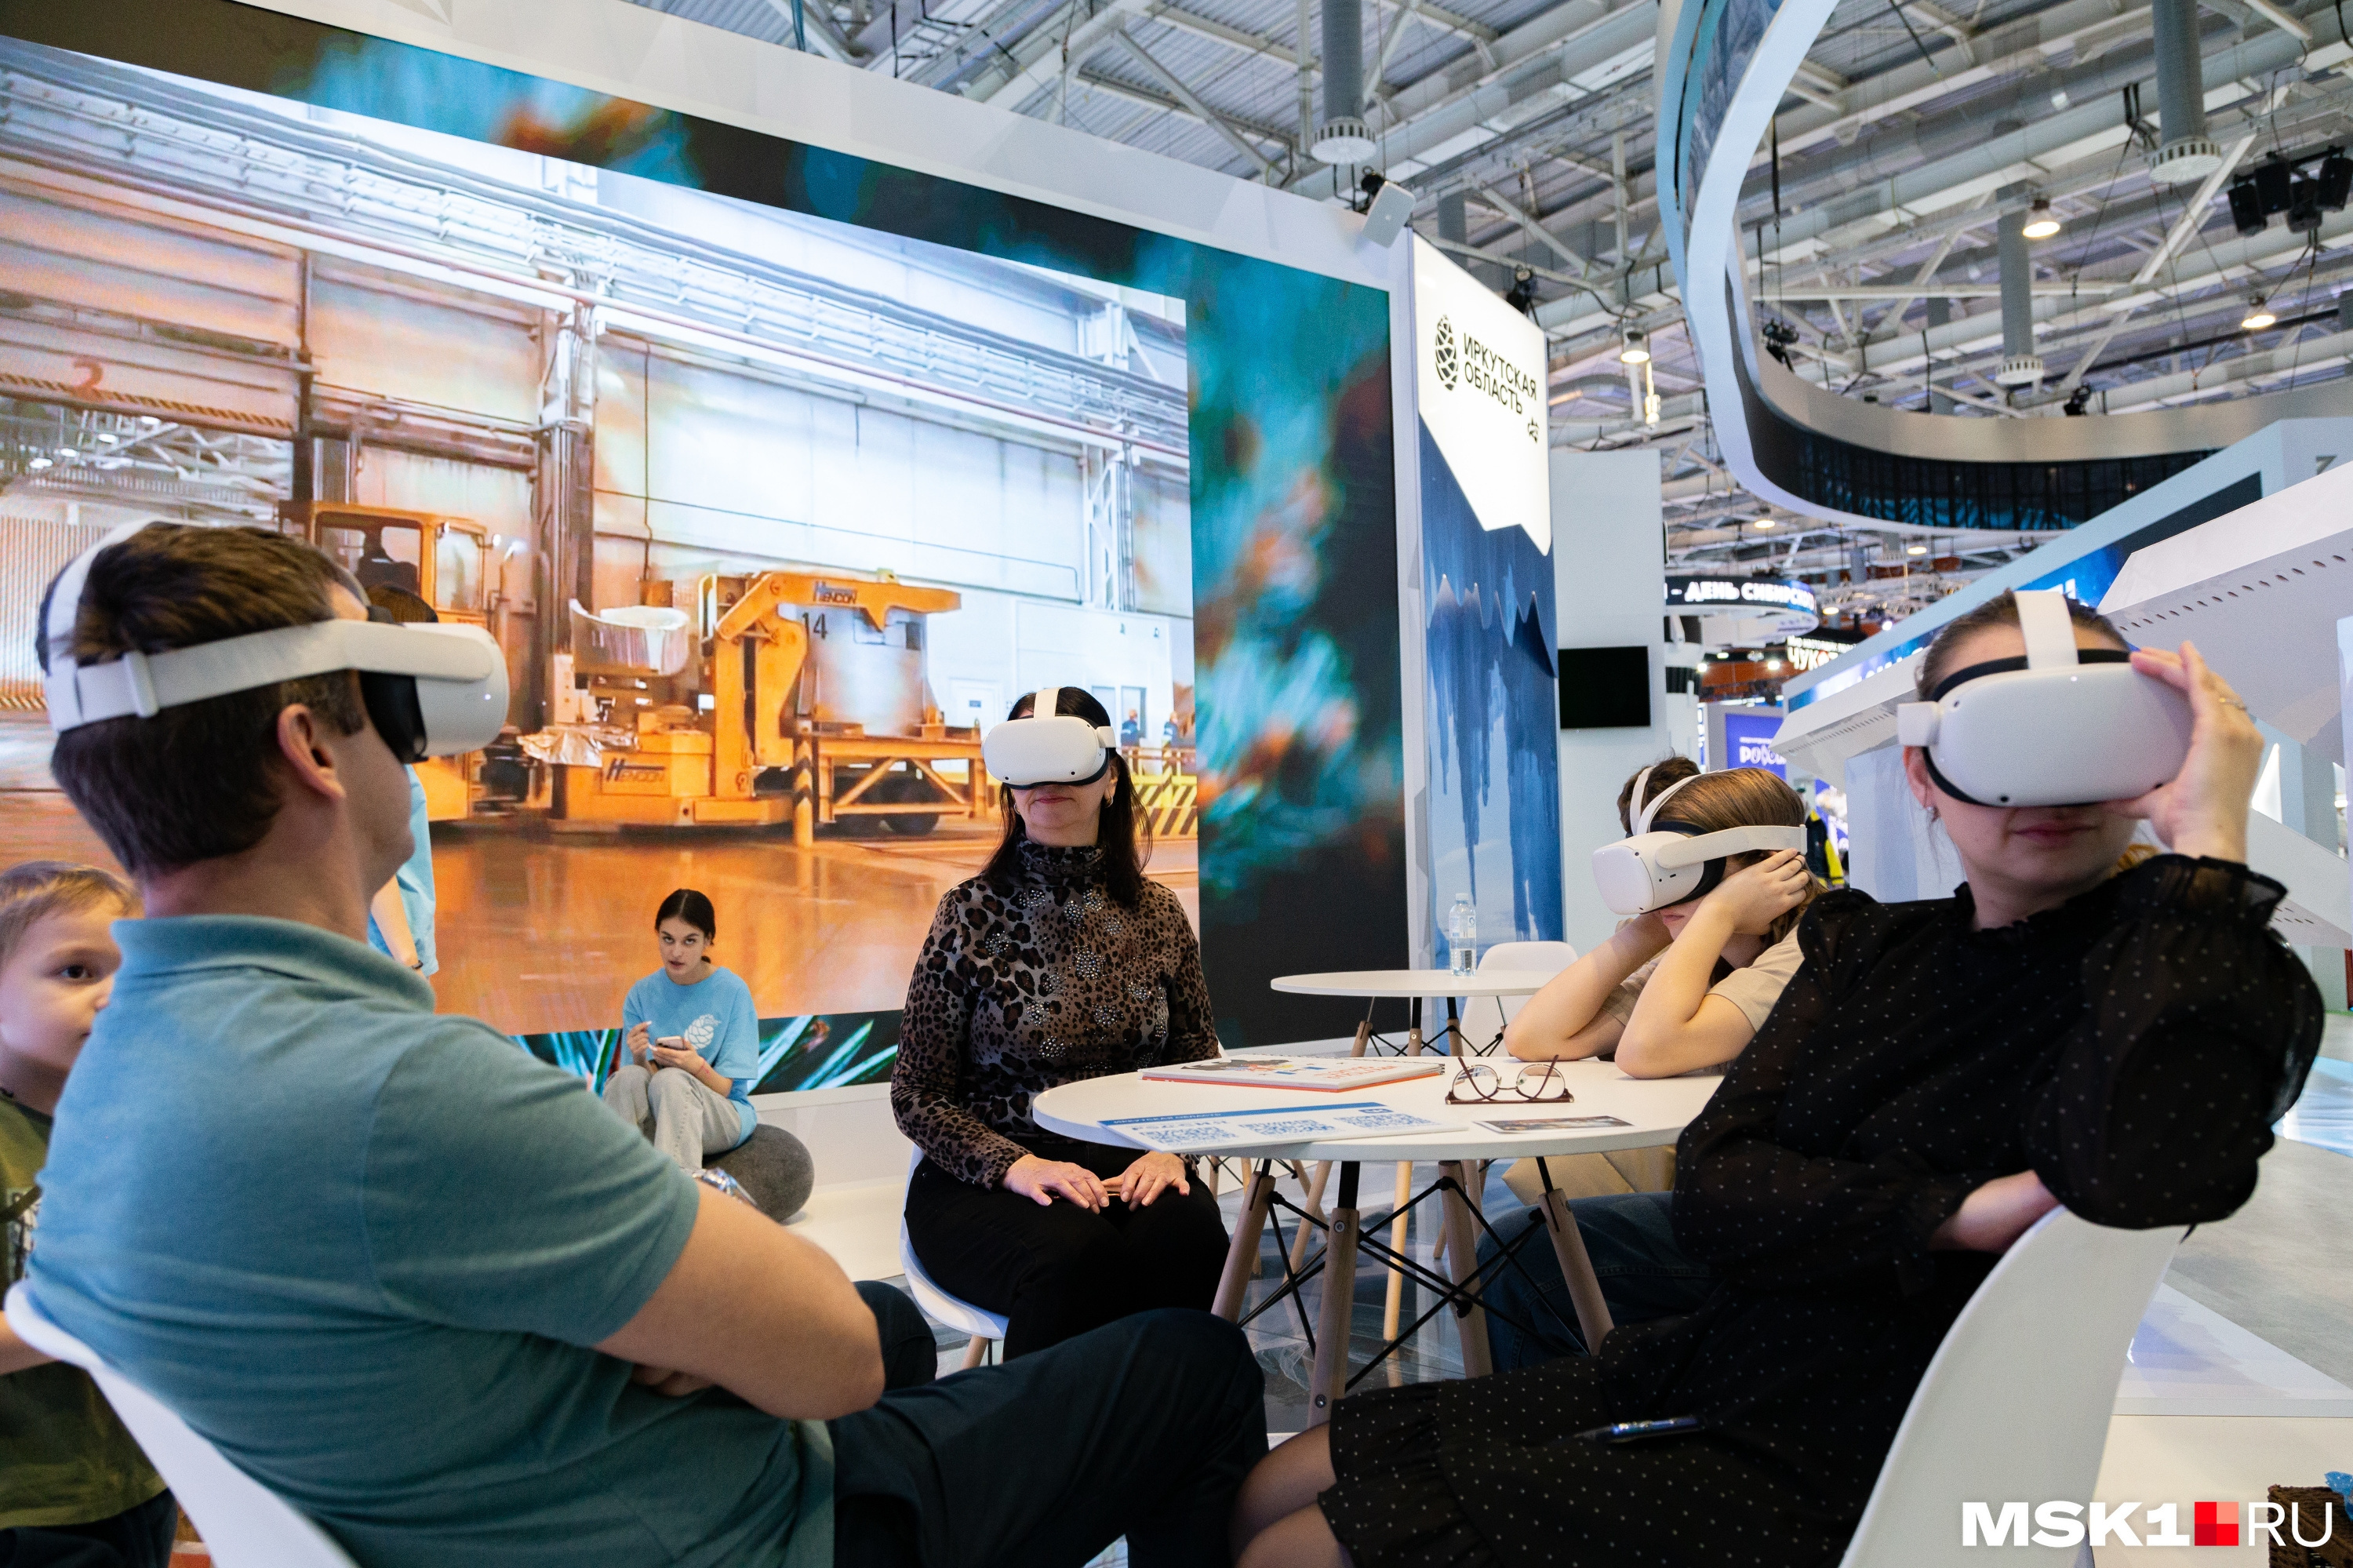 Робот-дворник, тренажеры для машинистов и 3D модели самолётов: на выставке «Россия» открылись новые экспозиции